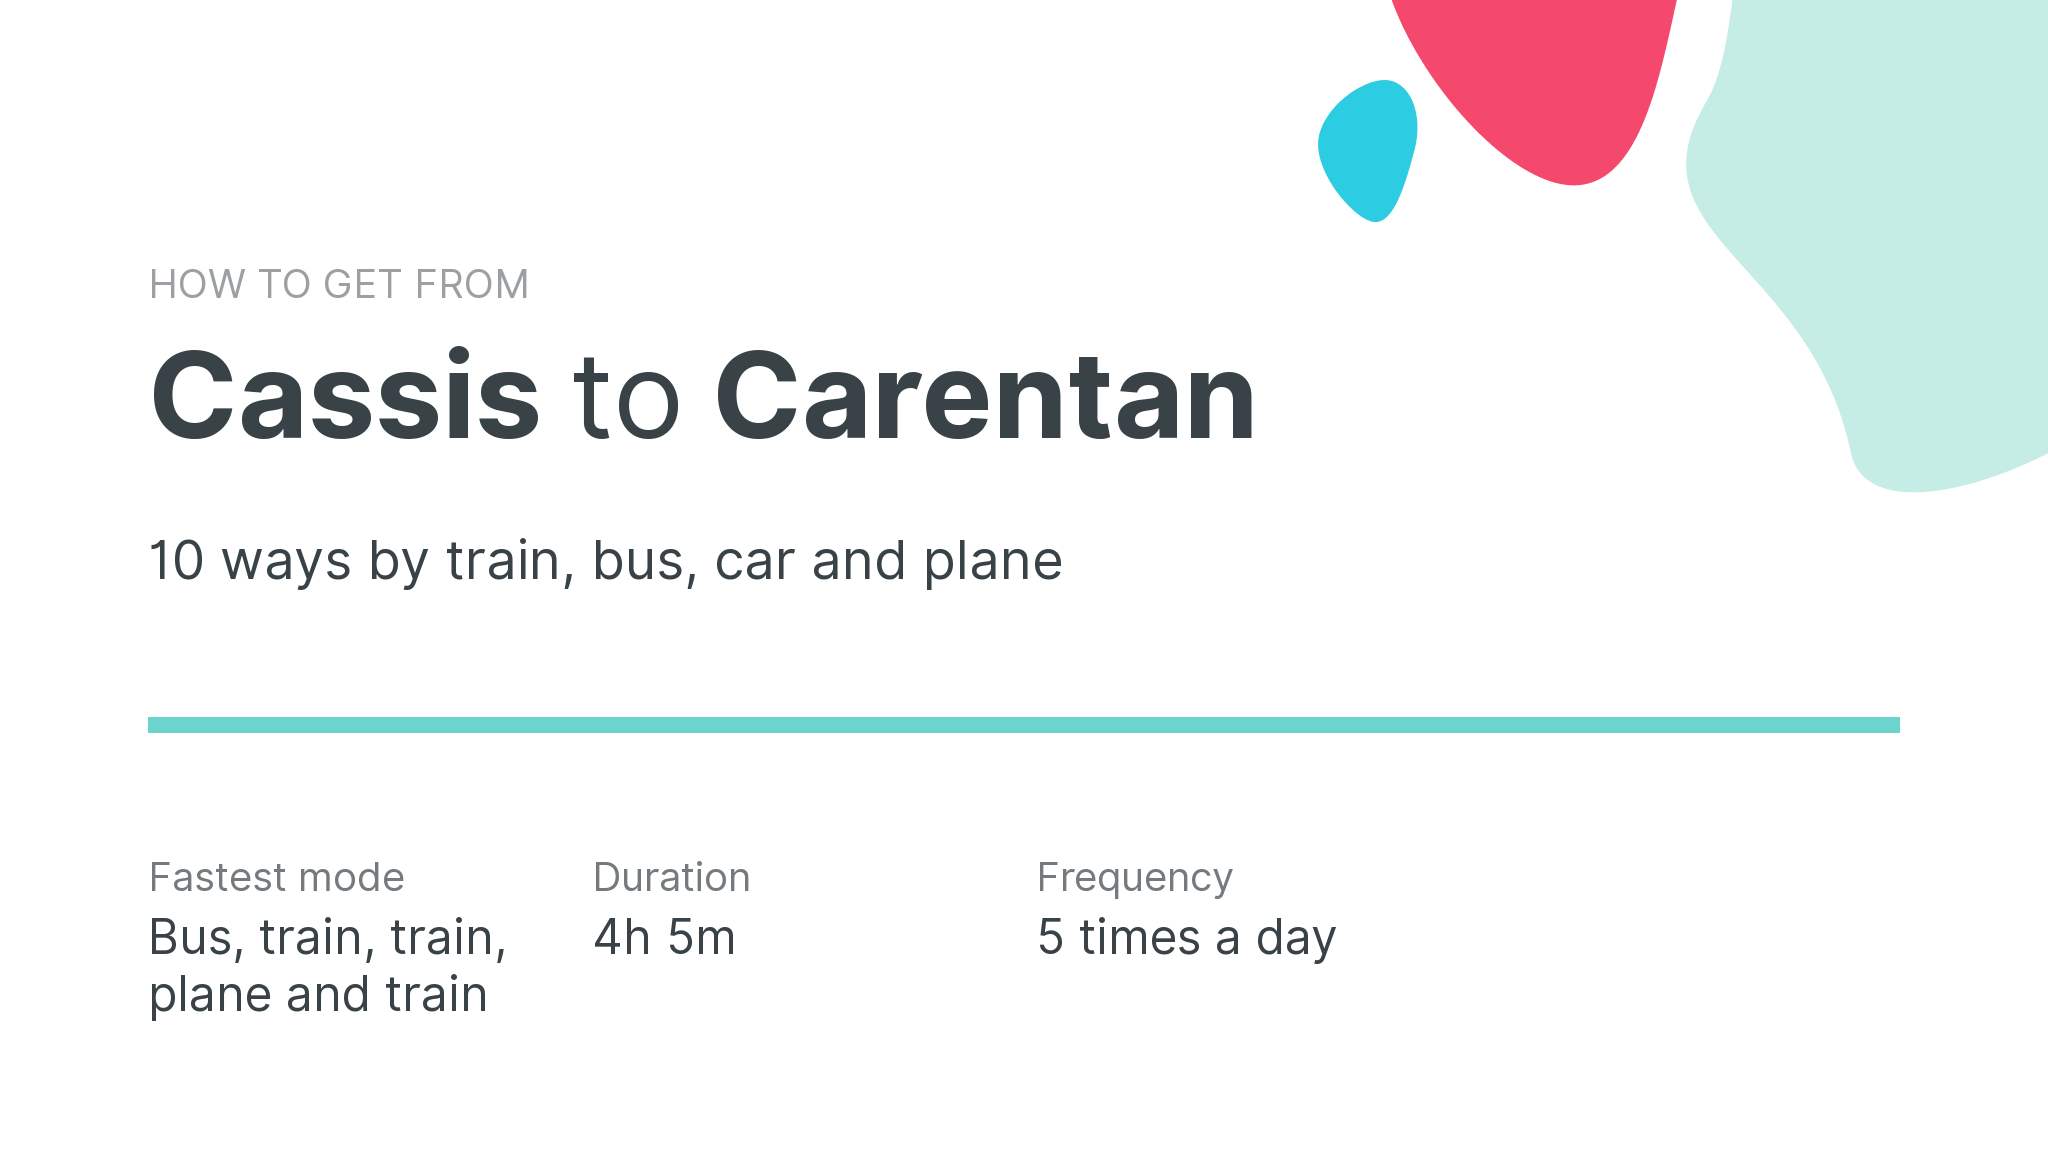 How do I get from Cassis to Carentan